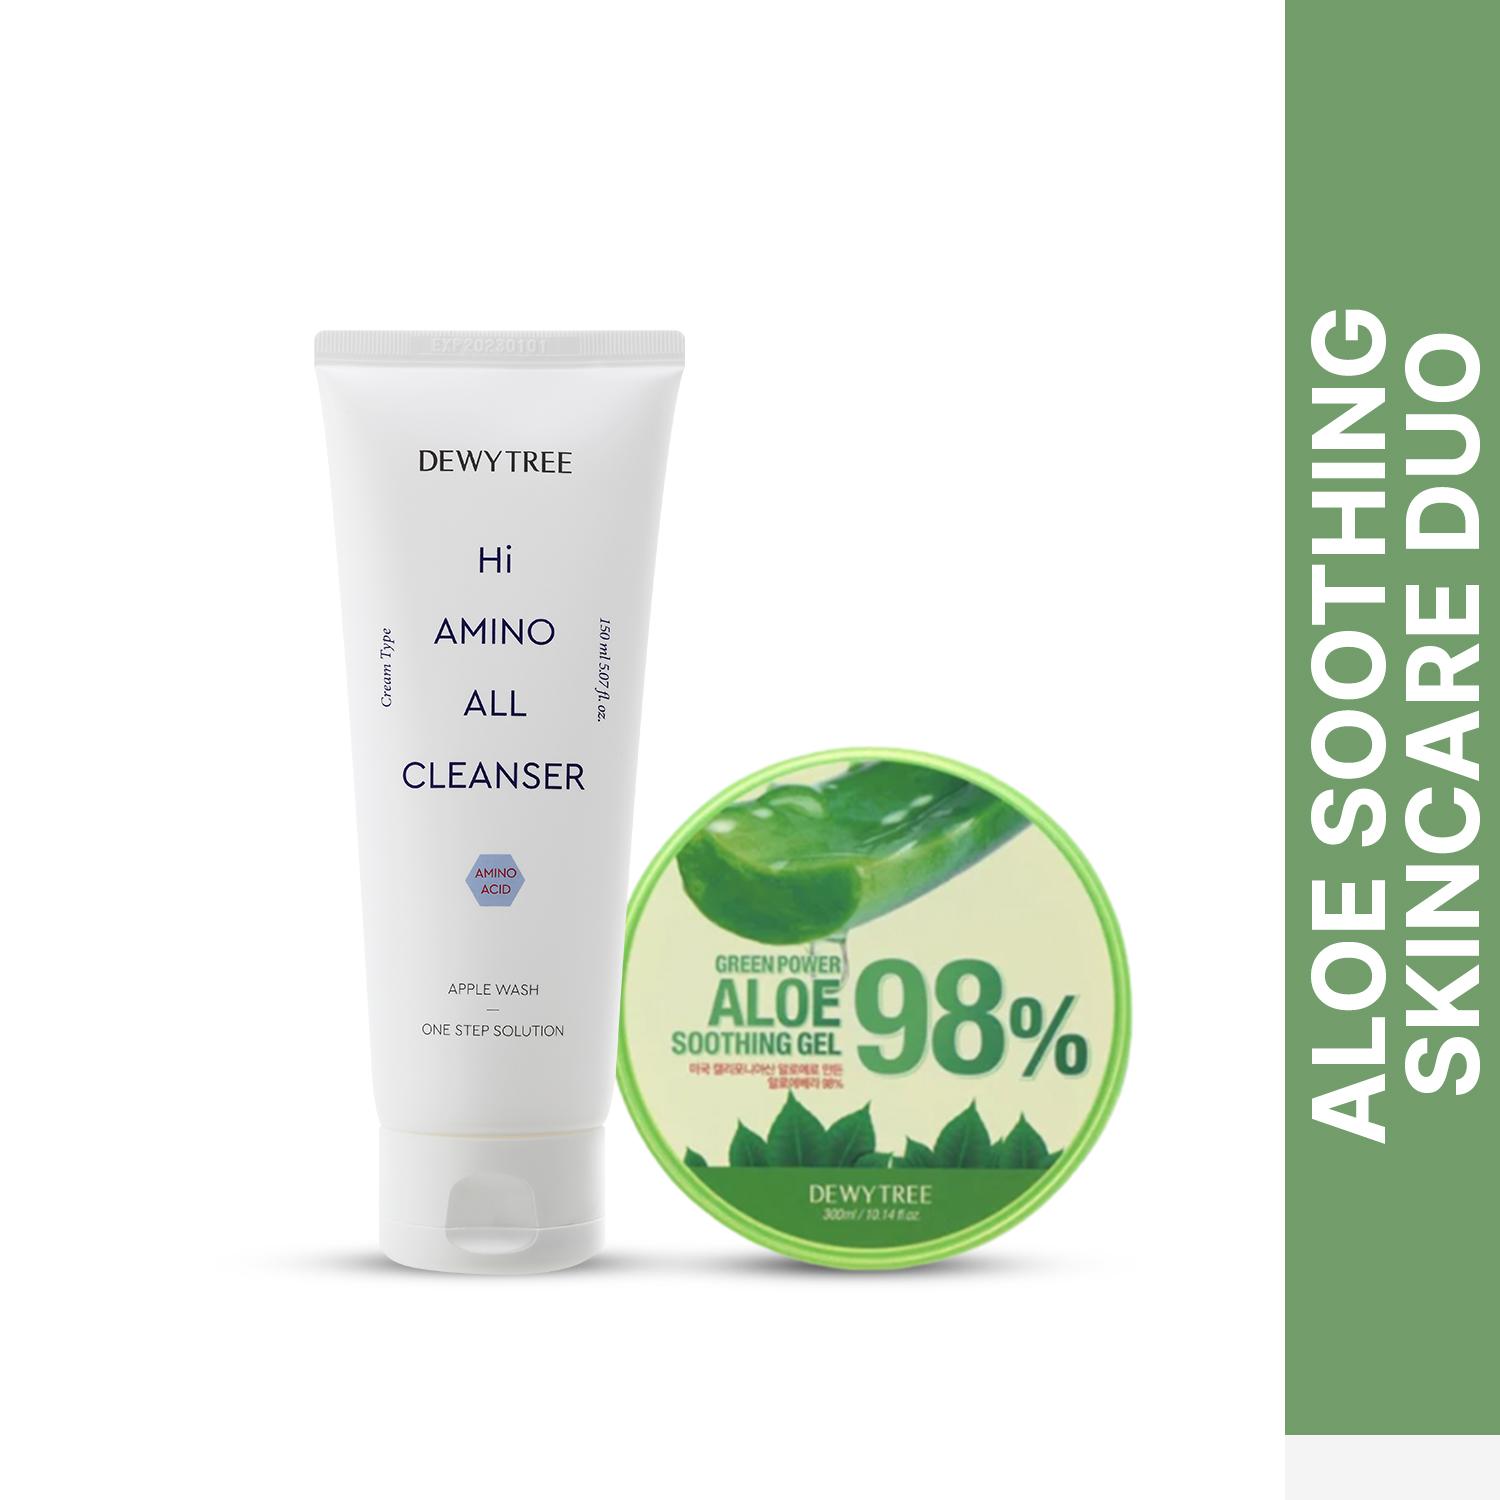 Dewytree | Dewytree Hi Amino All Cleanser (150 ml) & Green Power 98% Aloe Soothing Gel (300 ml) Combo